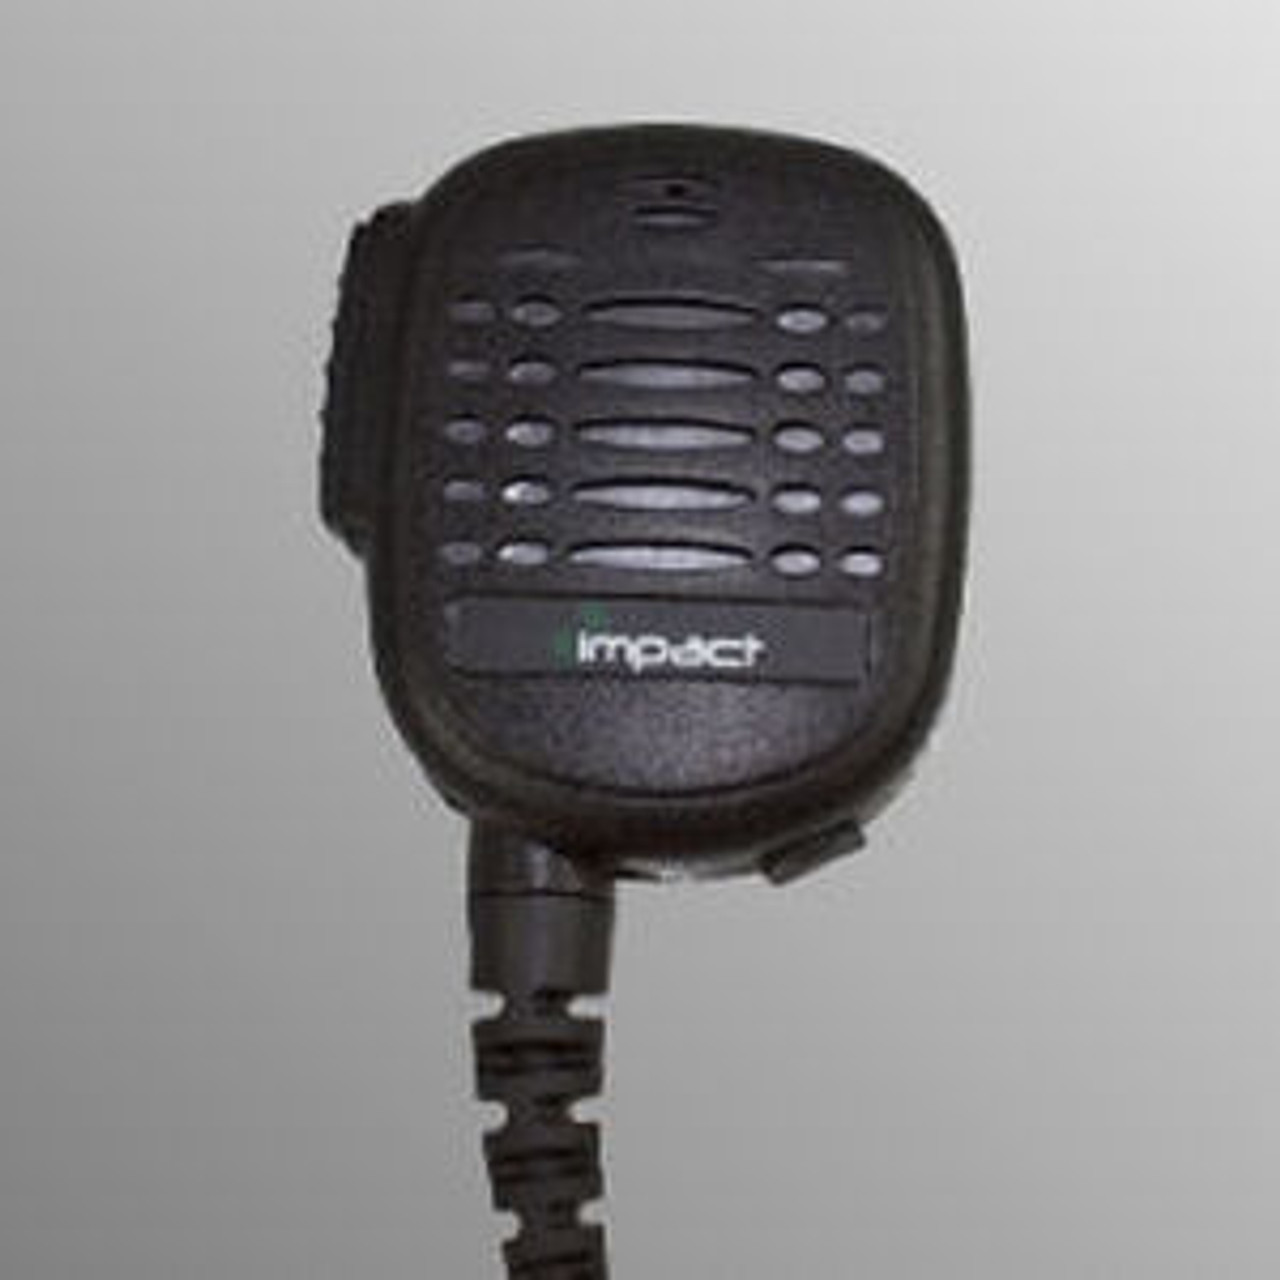 Kenwood VP5230 Noise Canceling Speaker Mic.